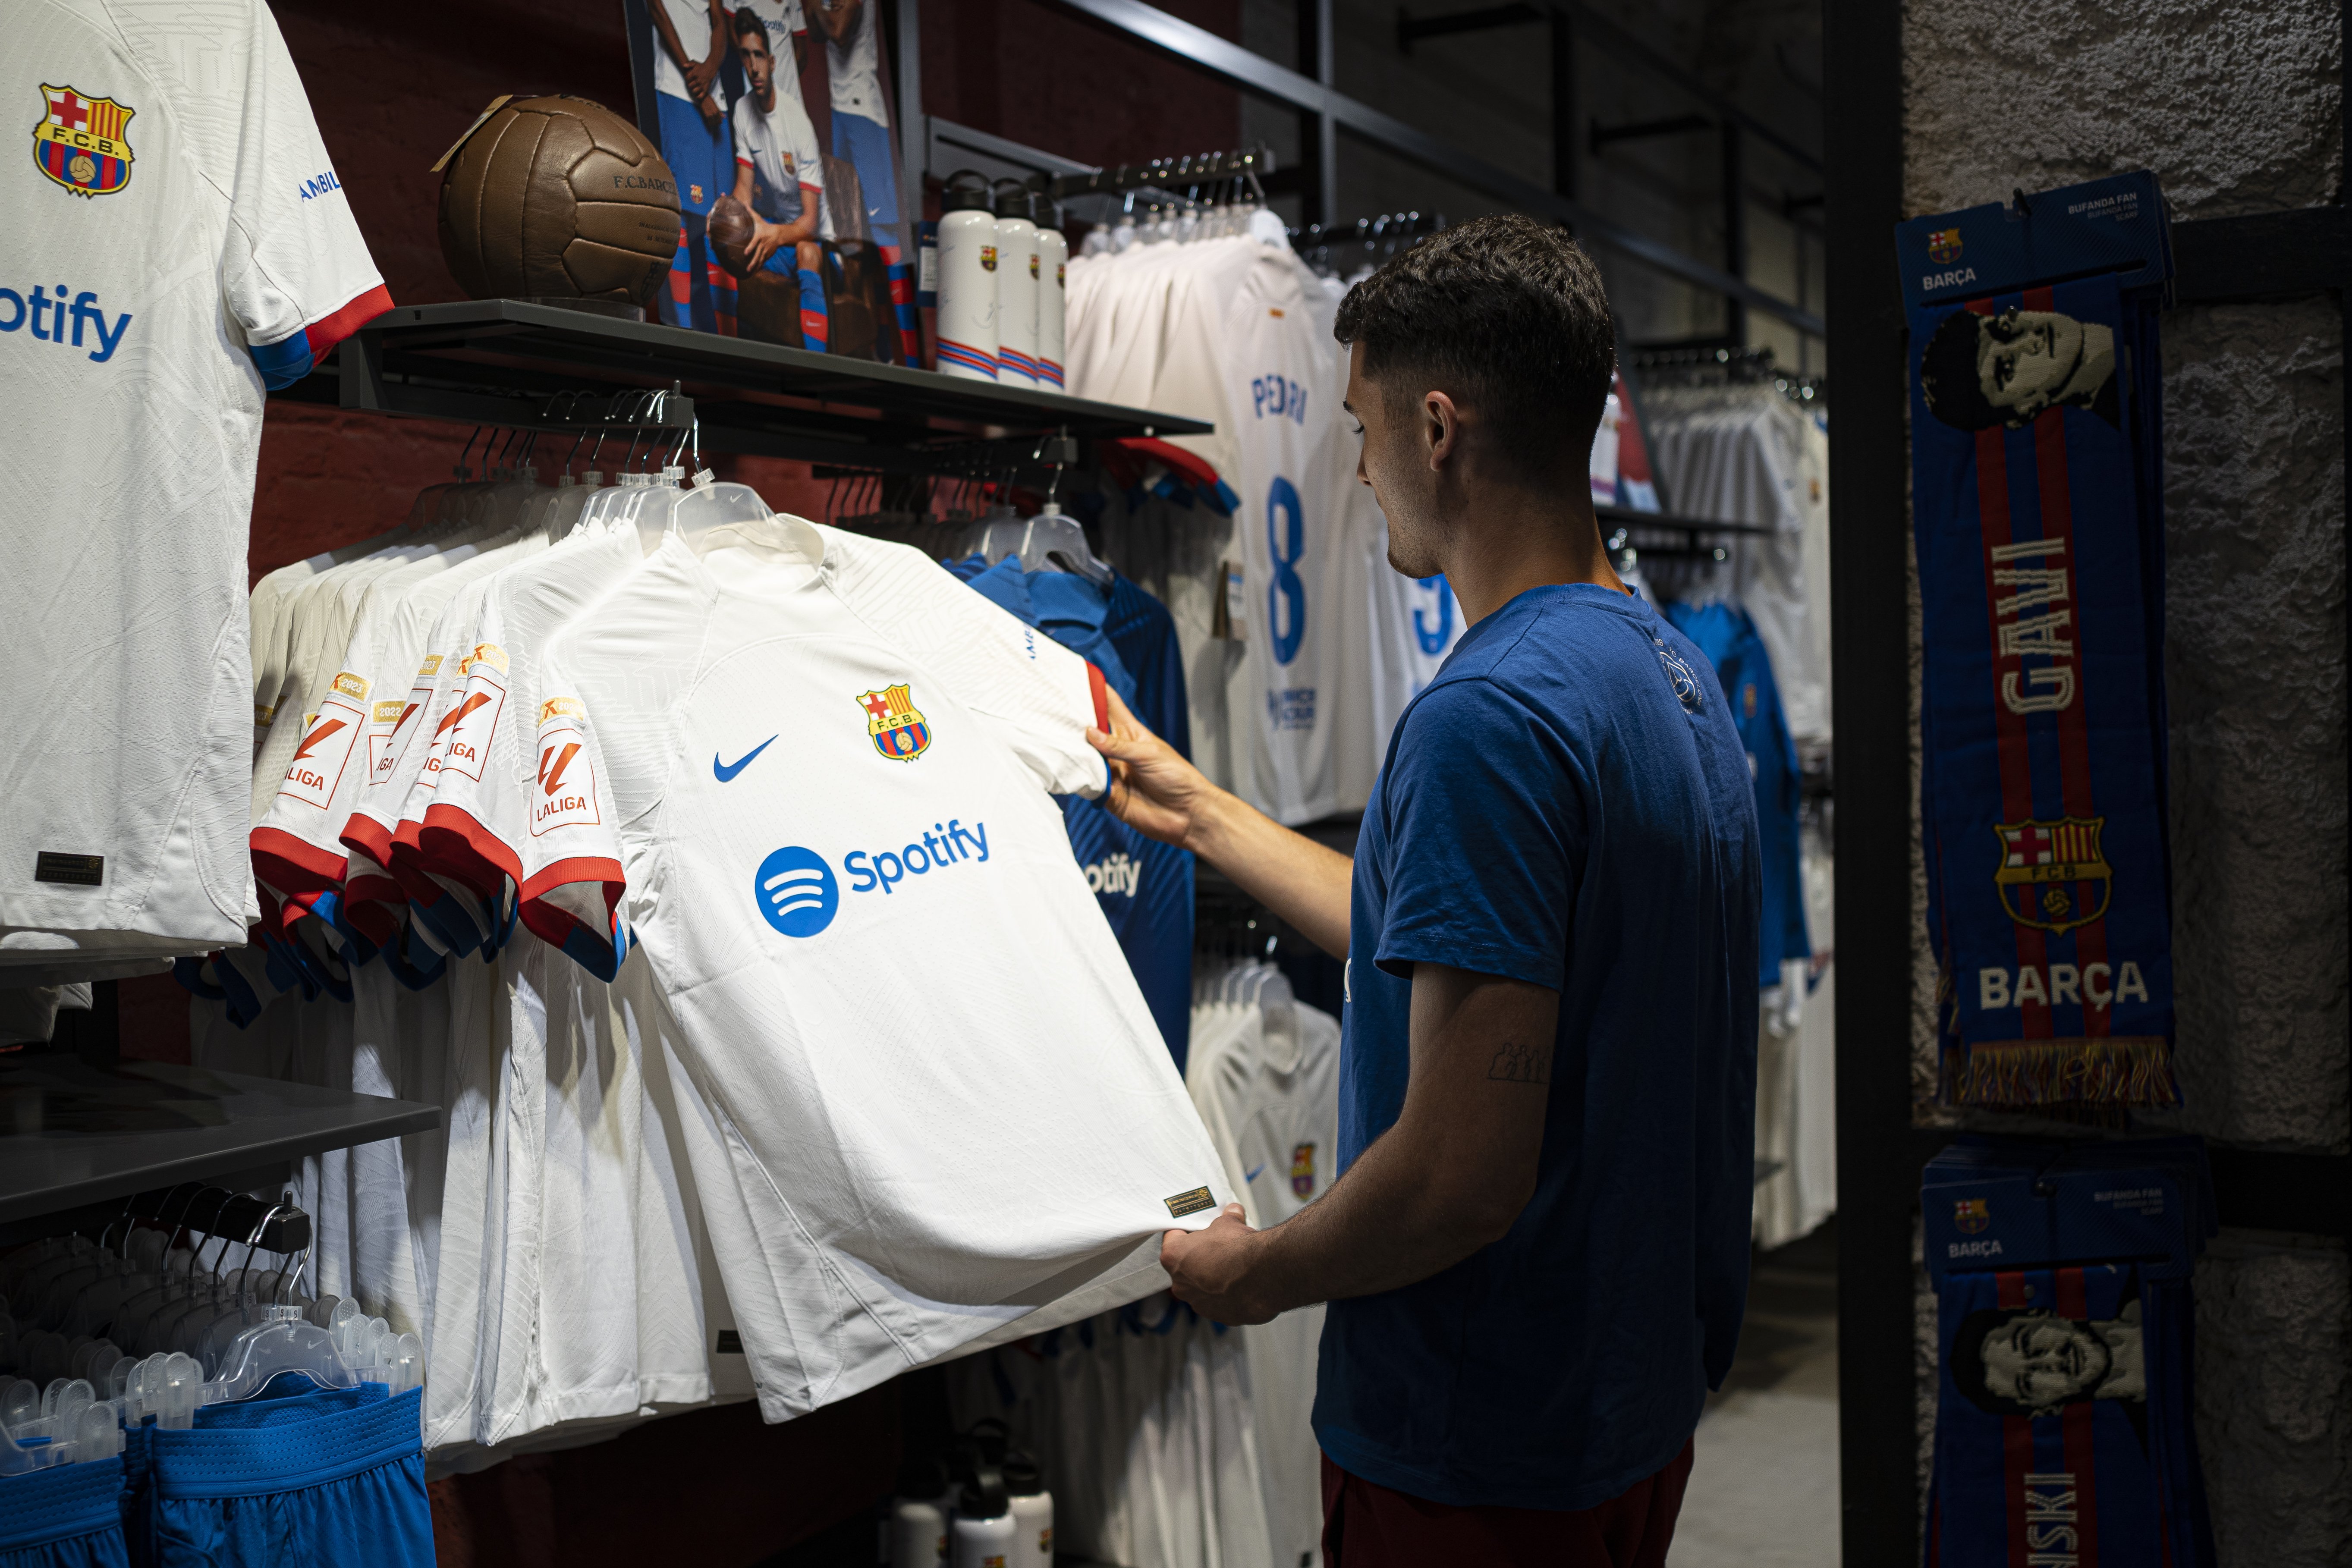 Decisión inminente del Barça sobre el futuro de la camiseta culé: Nike, en peligro real